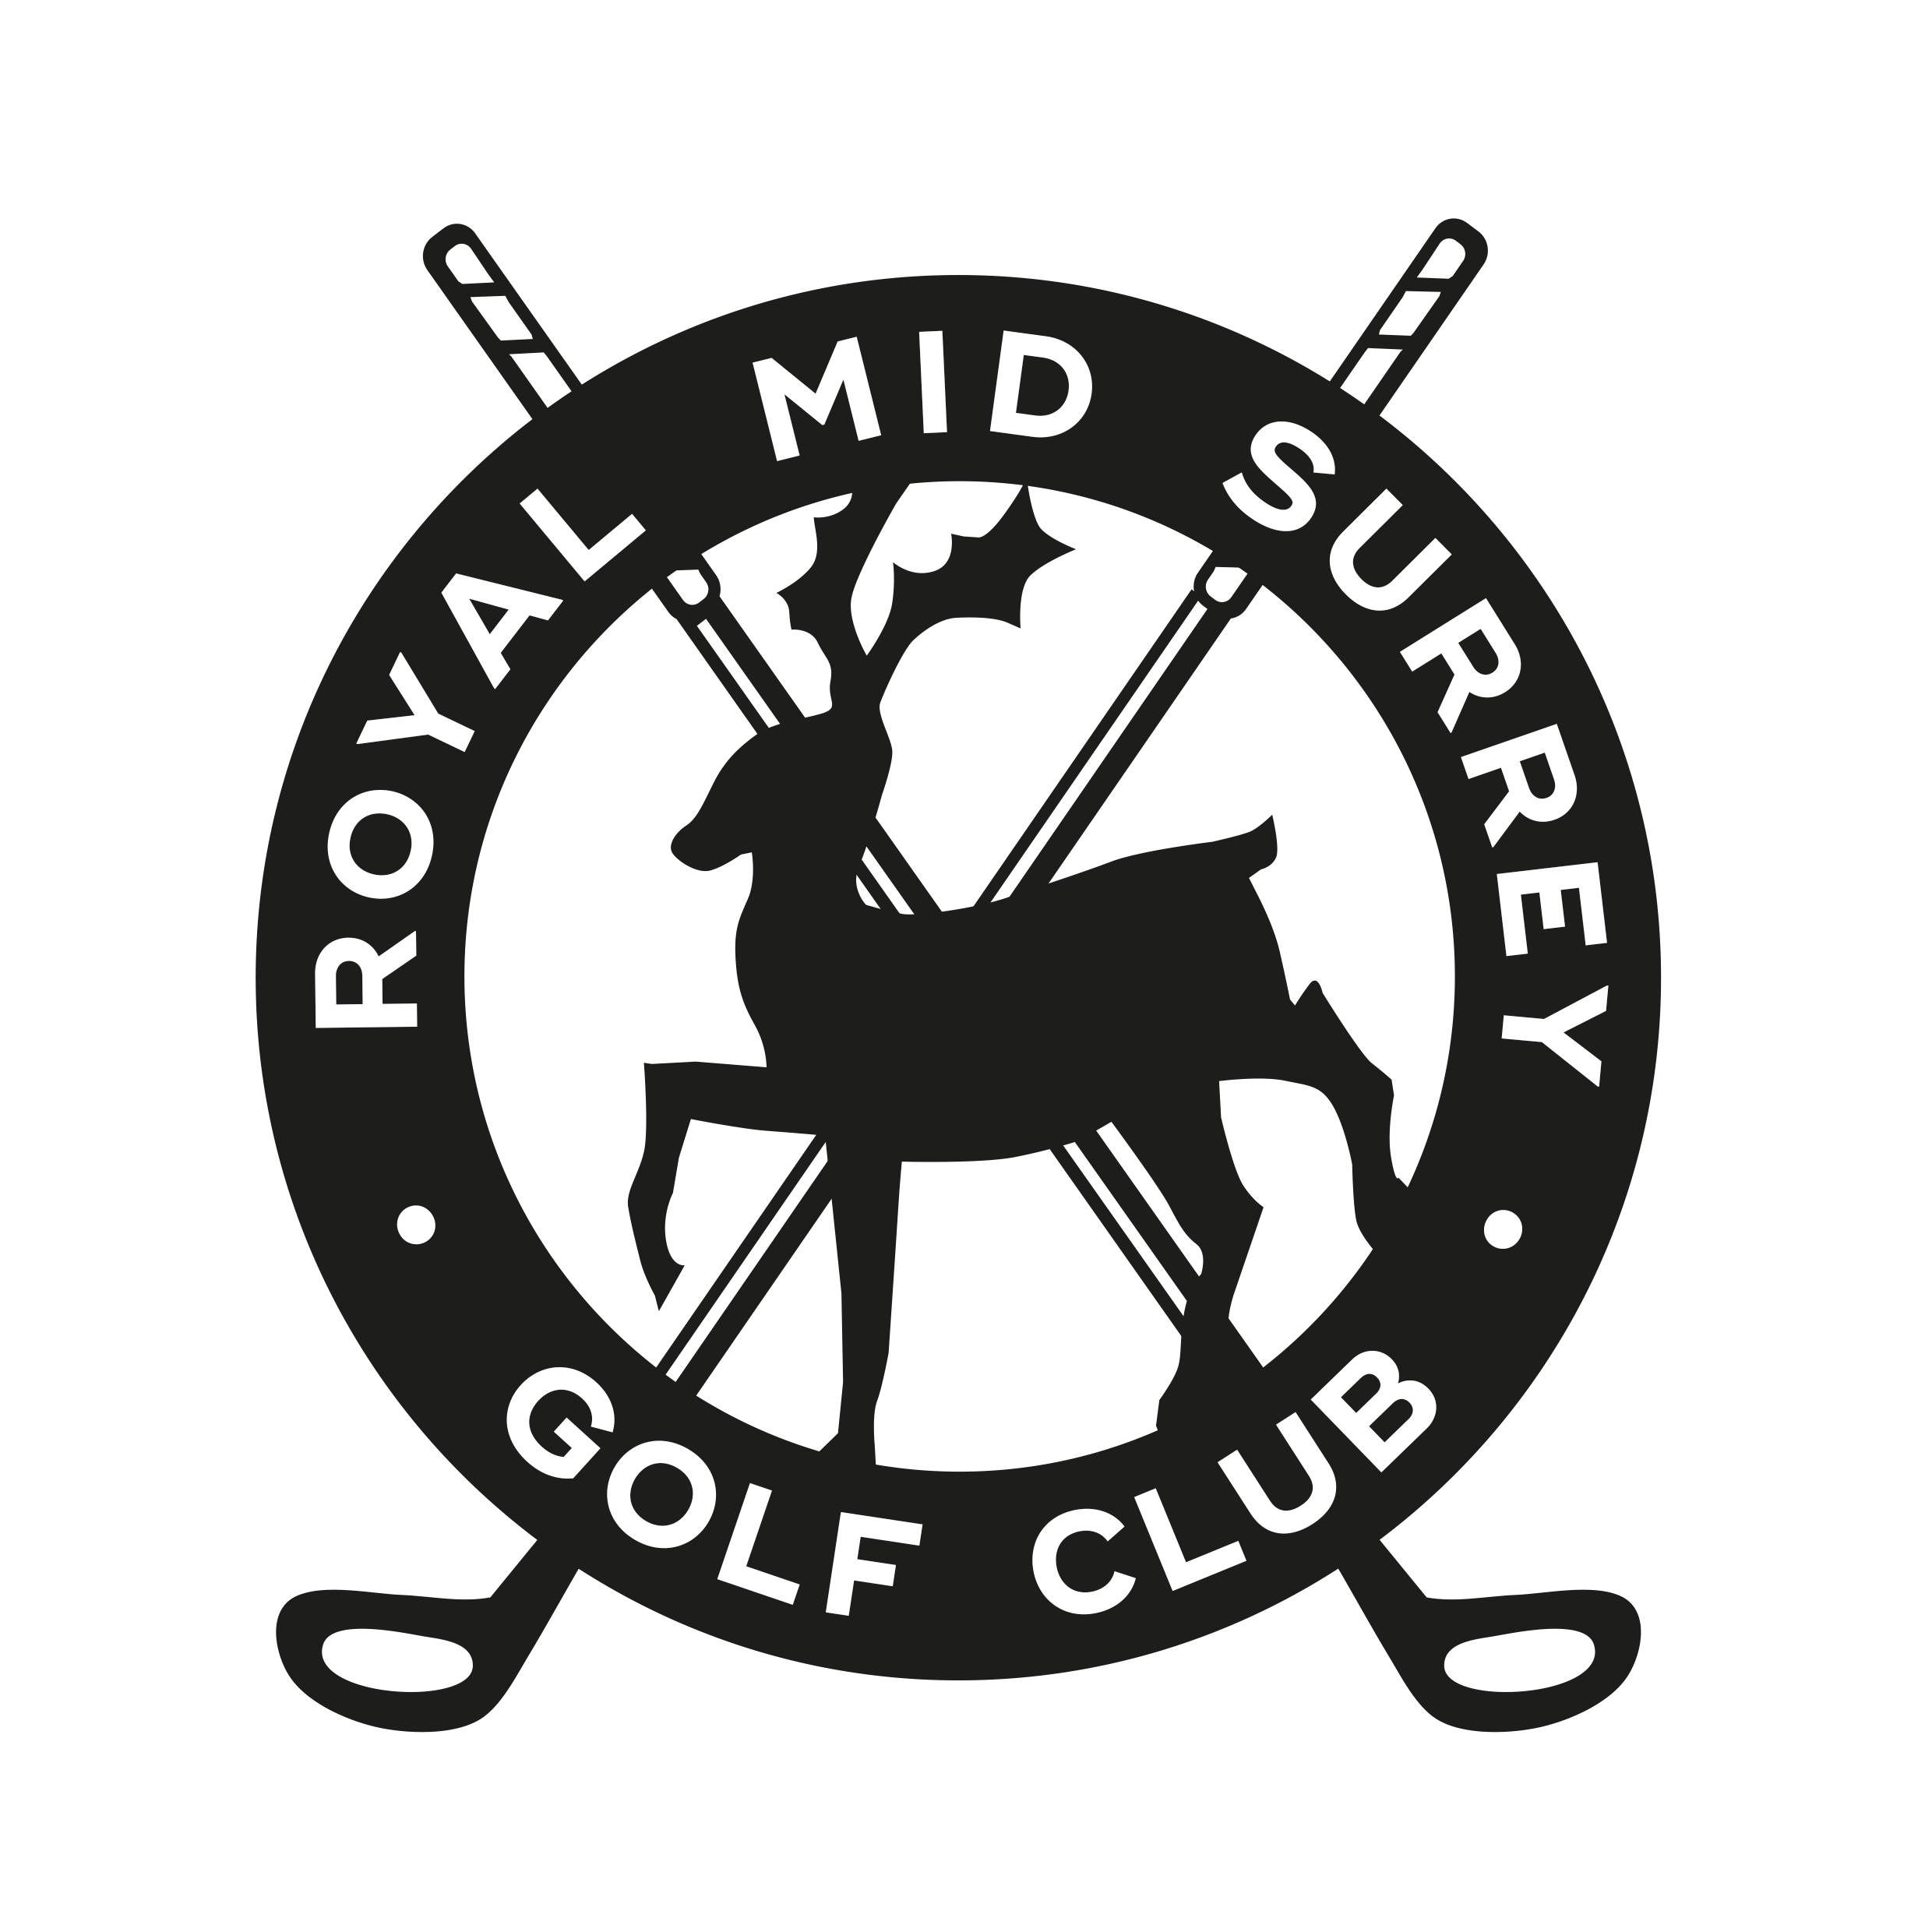 Golf Club Logo - Royal Mid-Surrey Golf Club :: Golf Club